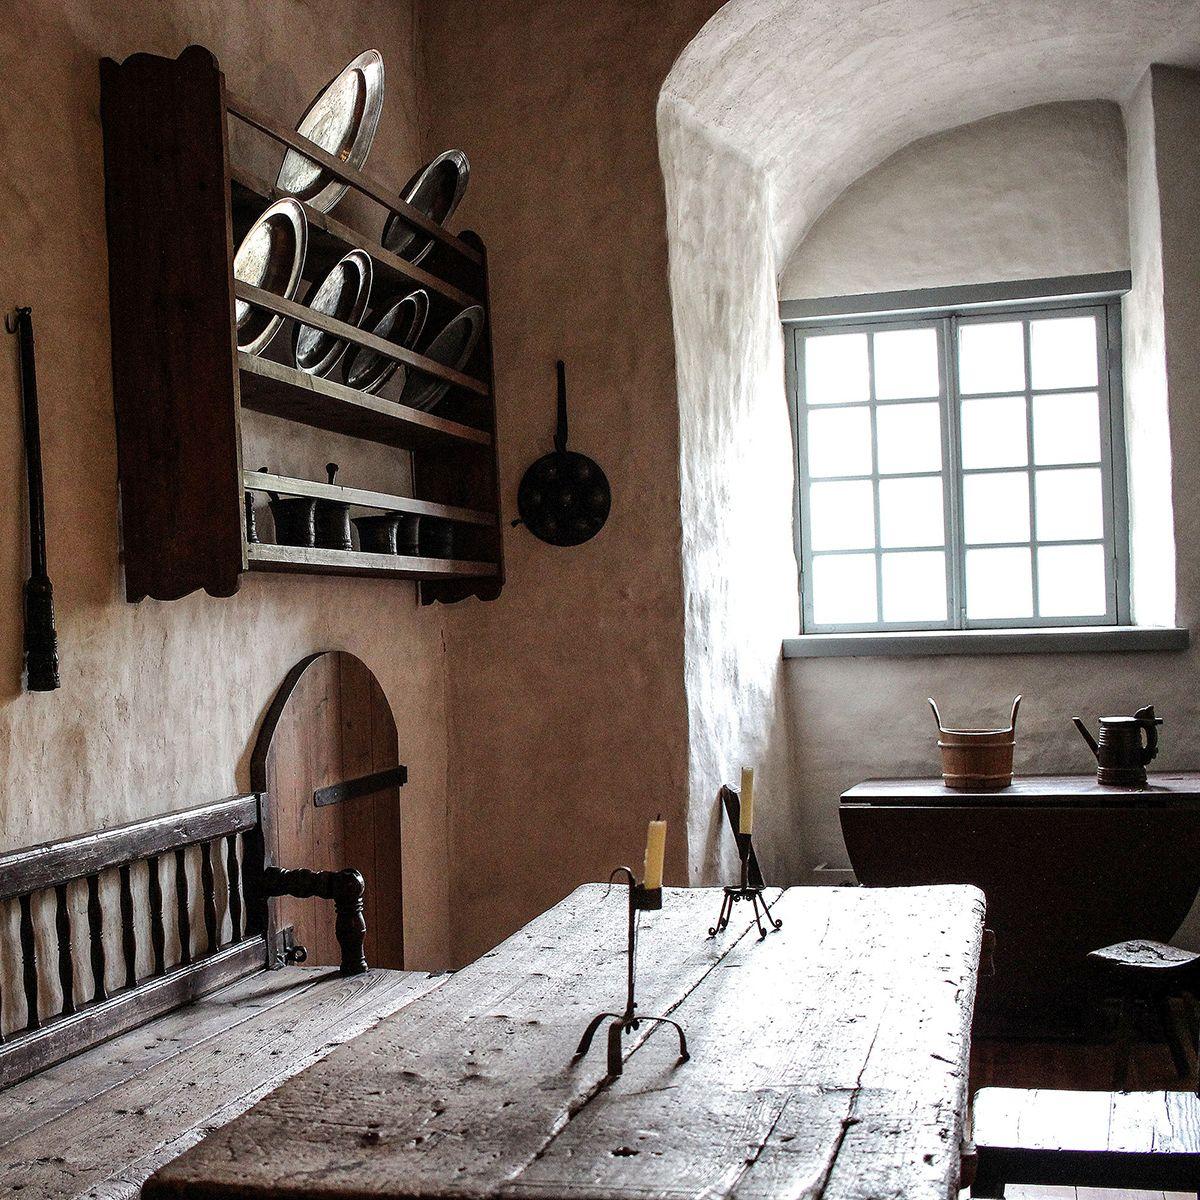 Vanhan keittiön sisustusta Turun linnassa. Keskellä on pitkä lankkupöytä ja seinillä roikkuu kuparisia paistinpannuja ja kattiloita.